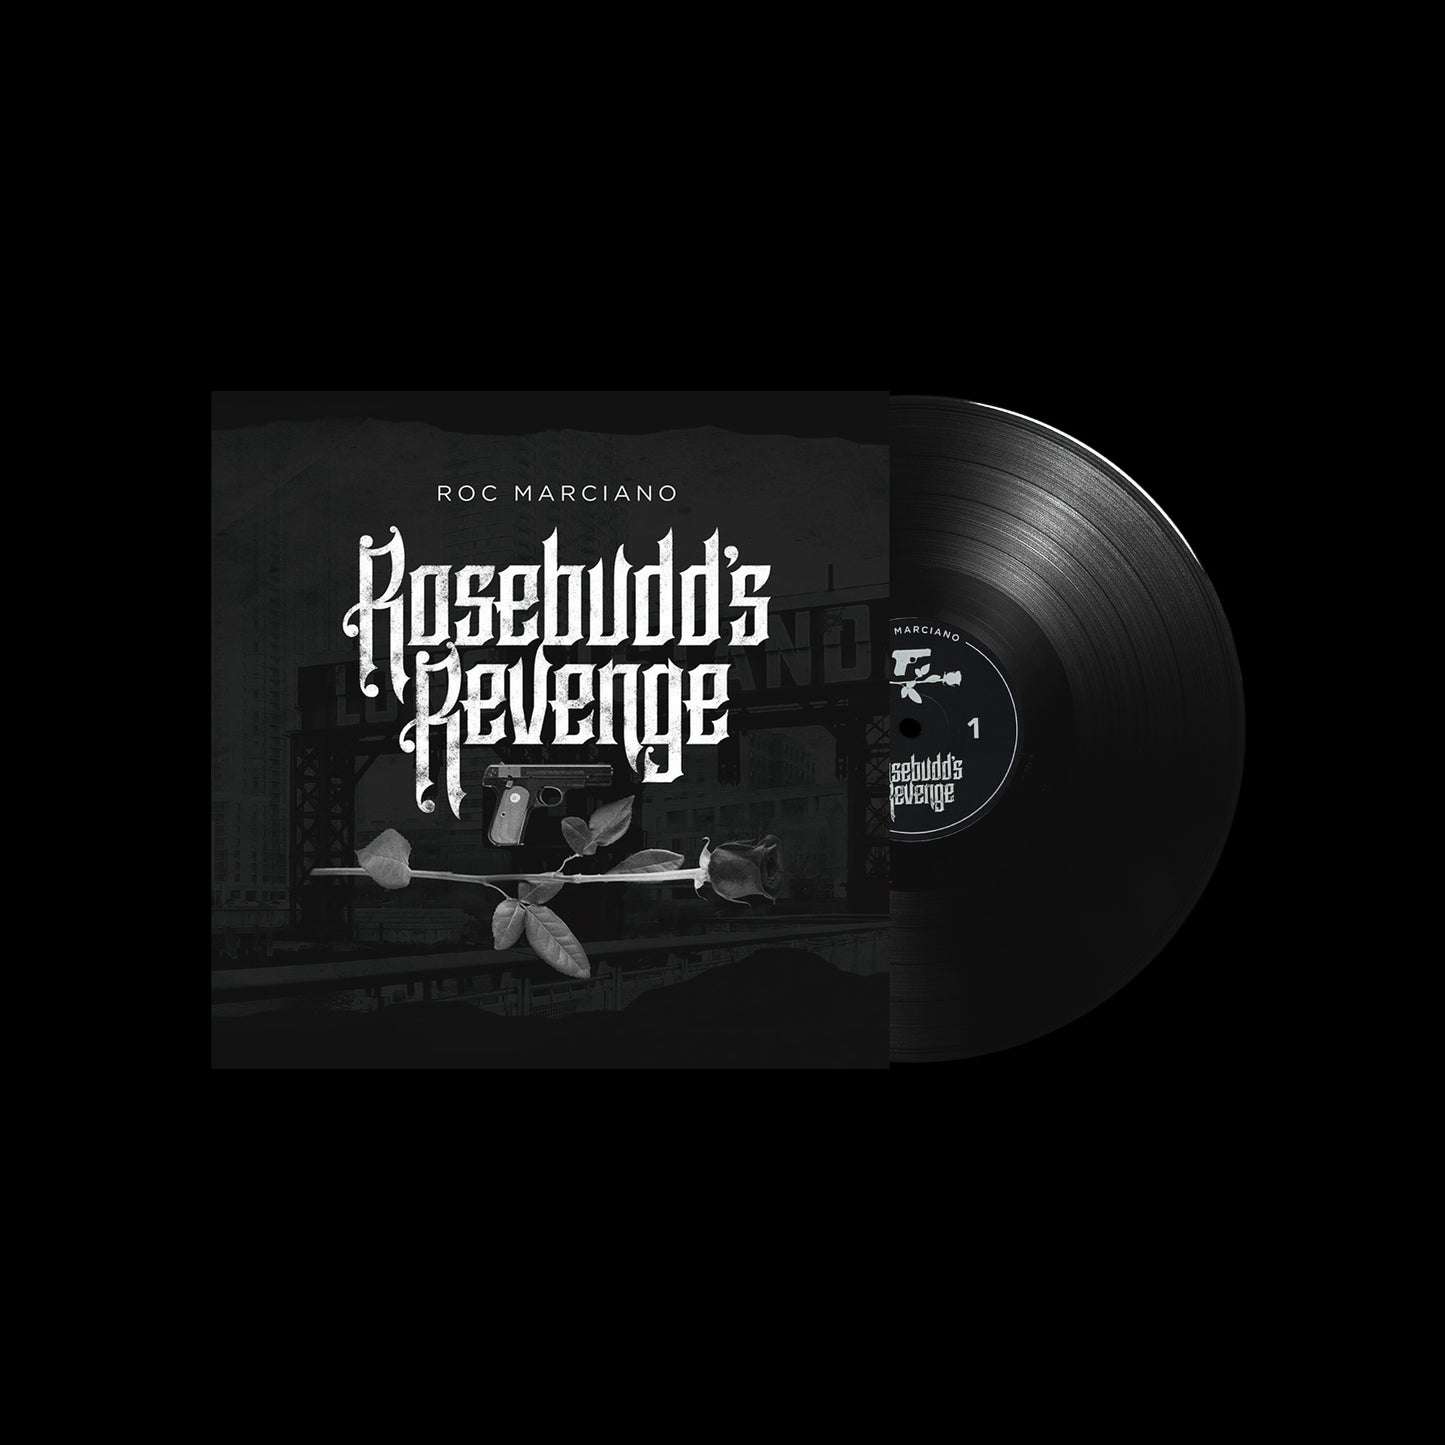 Rosebudd's Revenge (2xLP - Black Vinyl)